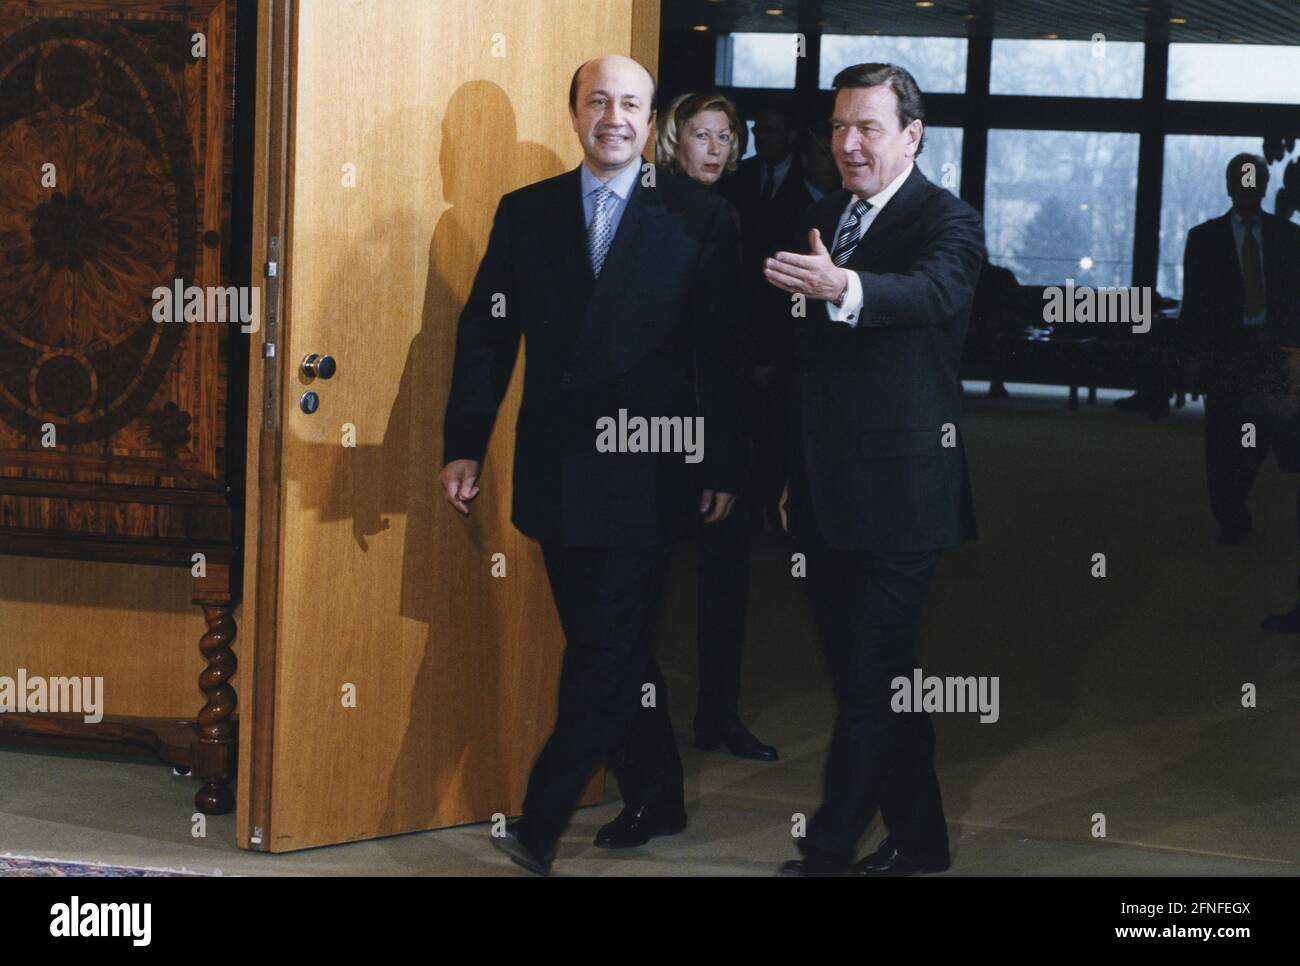 Le chancelier allemand Gerhard Schröder (à droite) reçoit à Bonn un diplomate russe et ministre des Affaires étrangères de la Fédération de Russie, Igor Ivanov. [traduction automatique] Banque D'Images